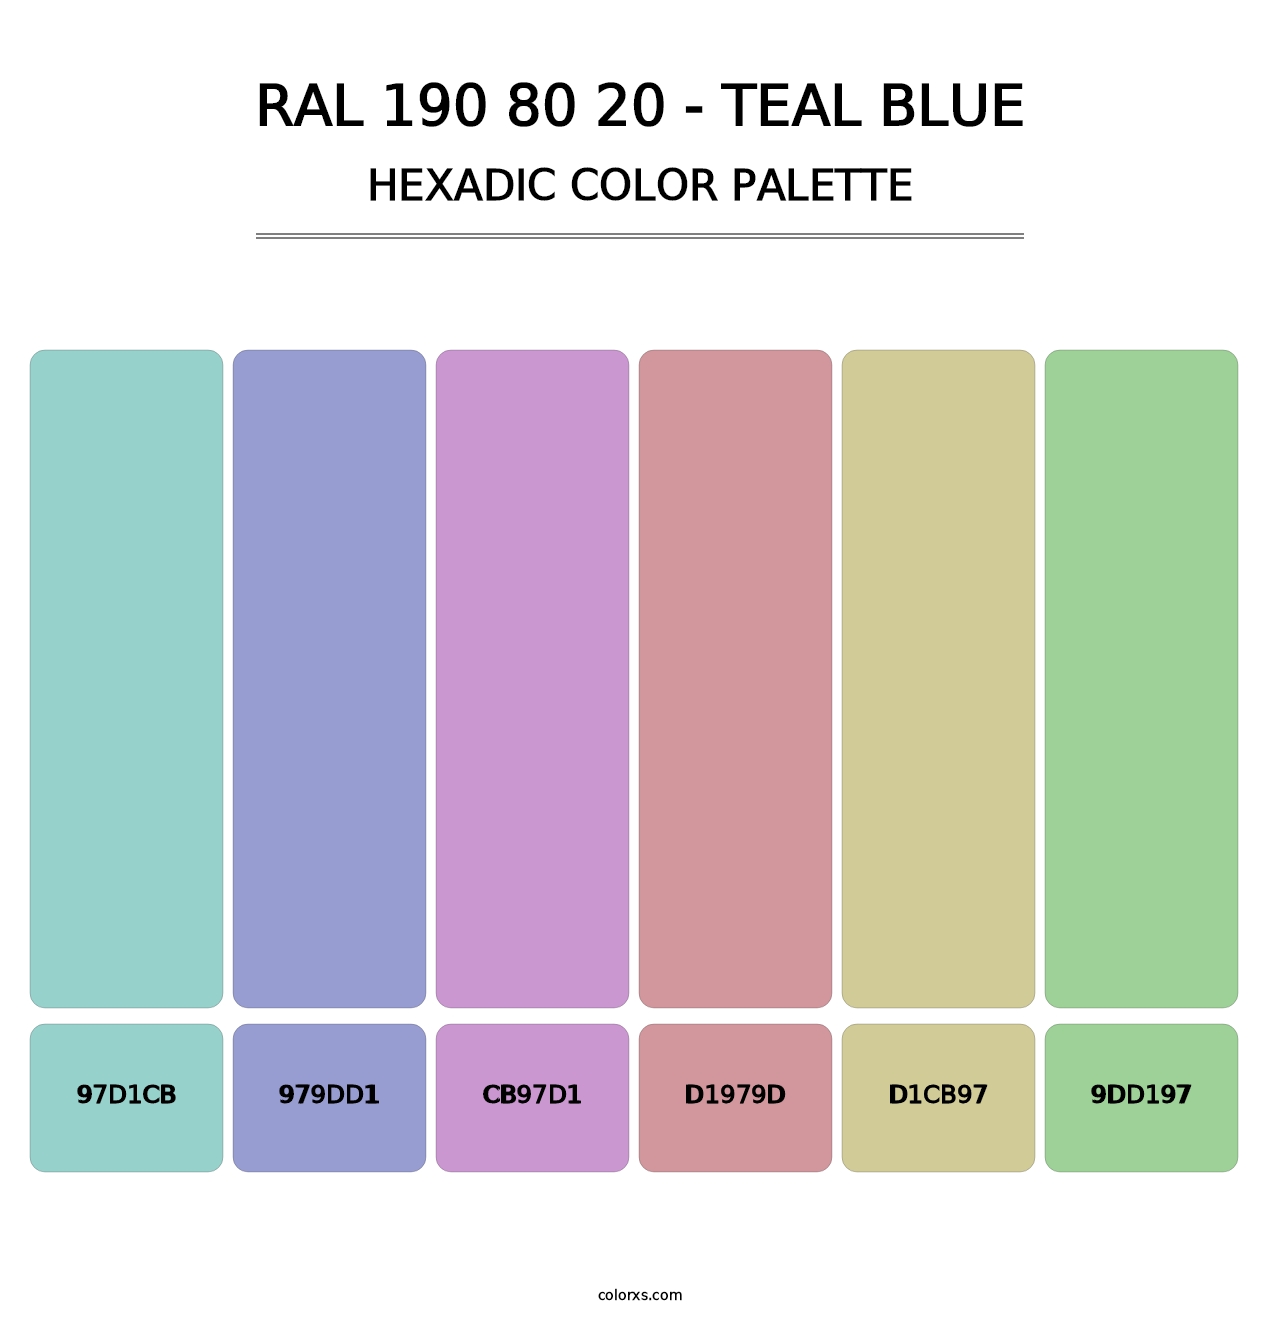 RAL 190 80 20 - Teal Blue - Hexadic Color Palette